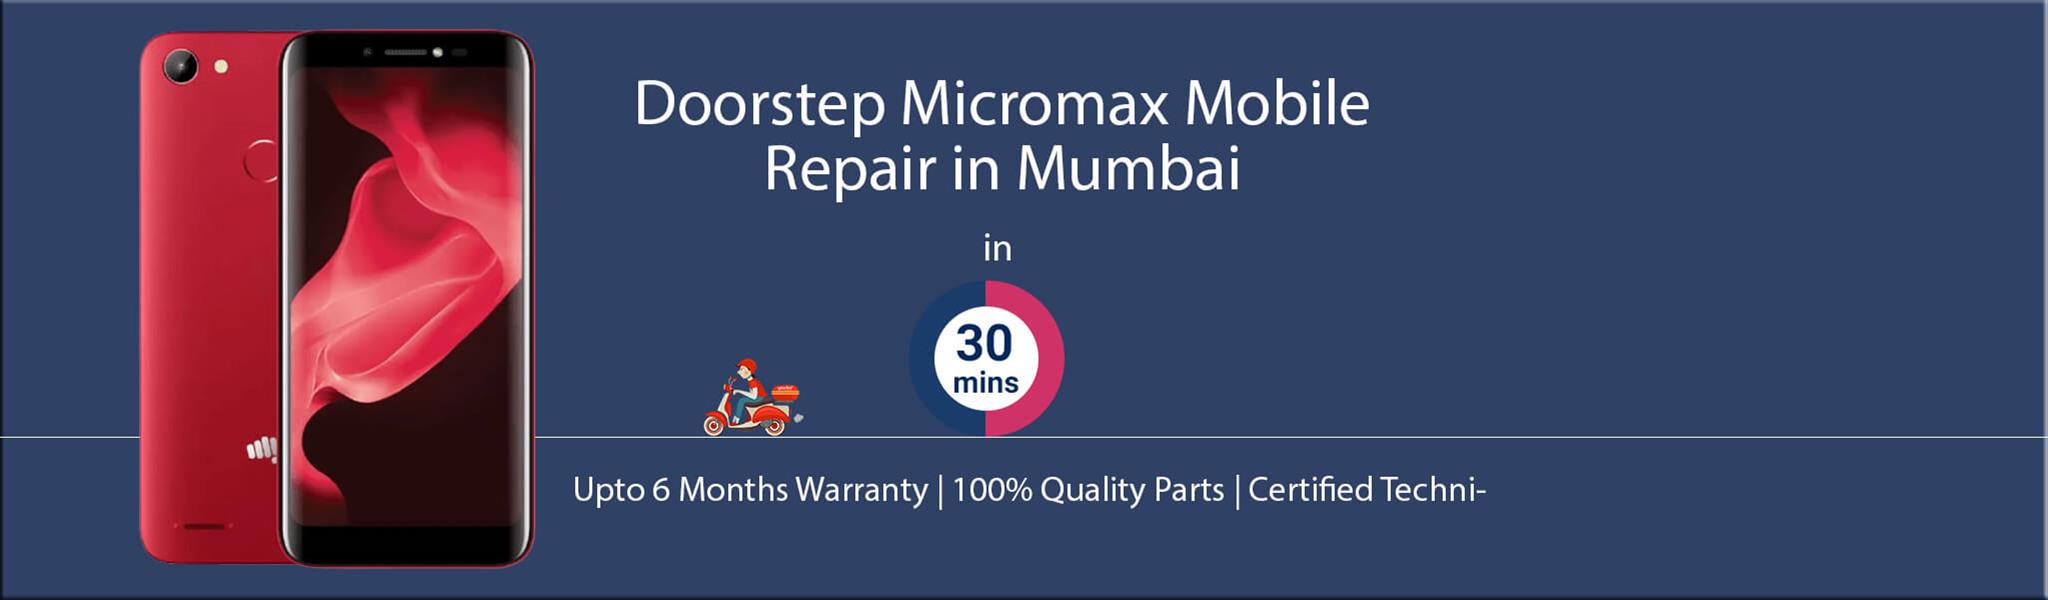 micromax-repair-service-banner-mumbai.jpg